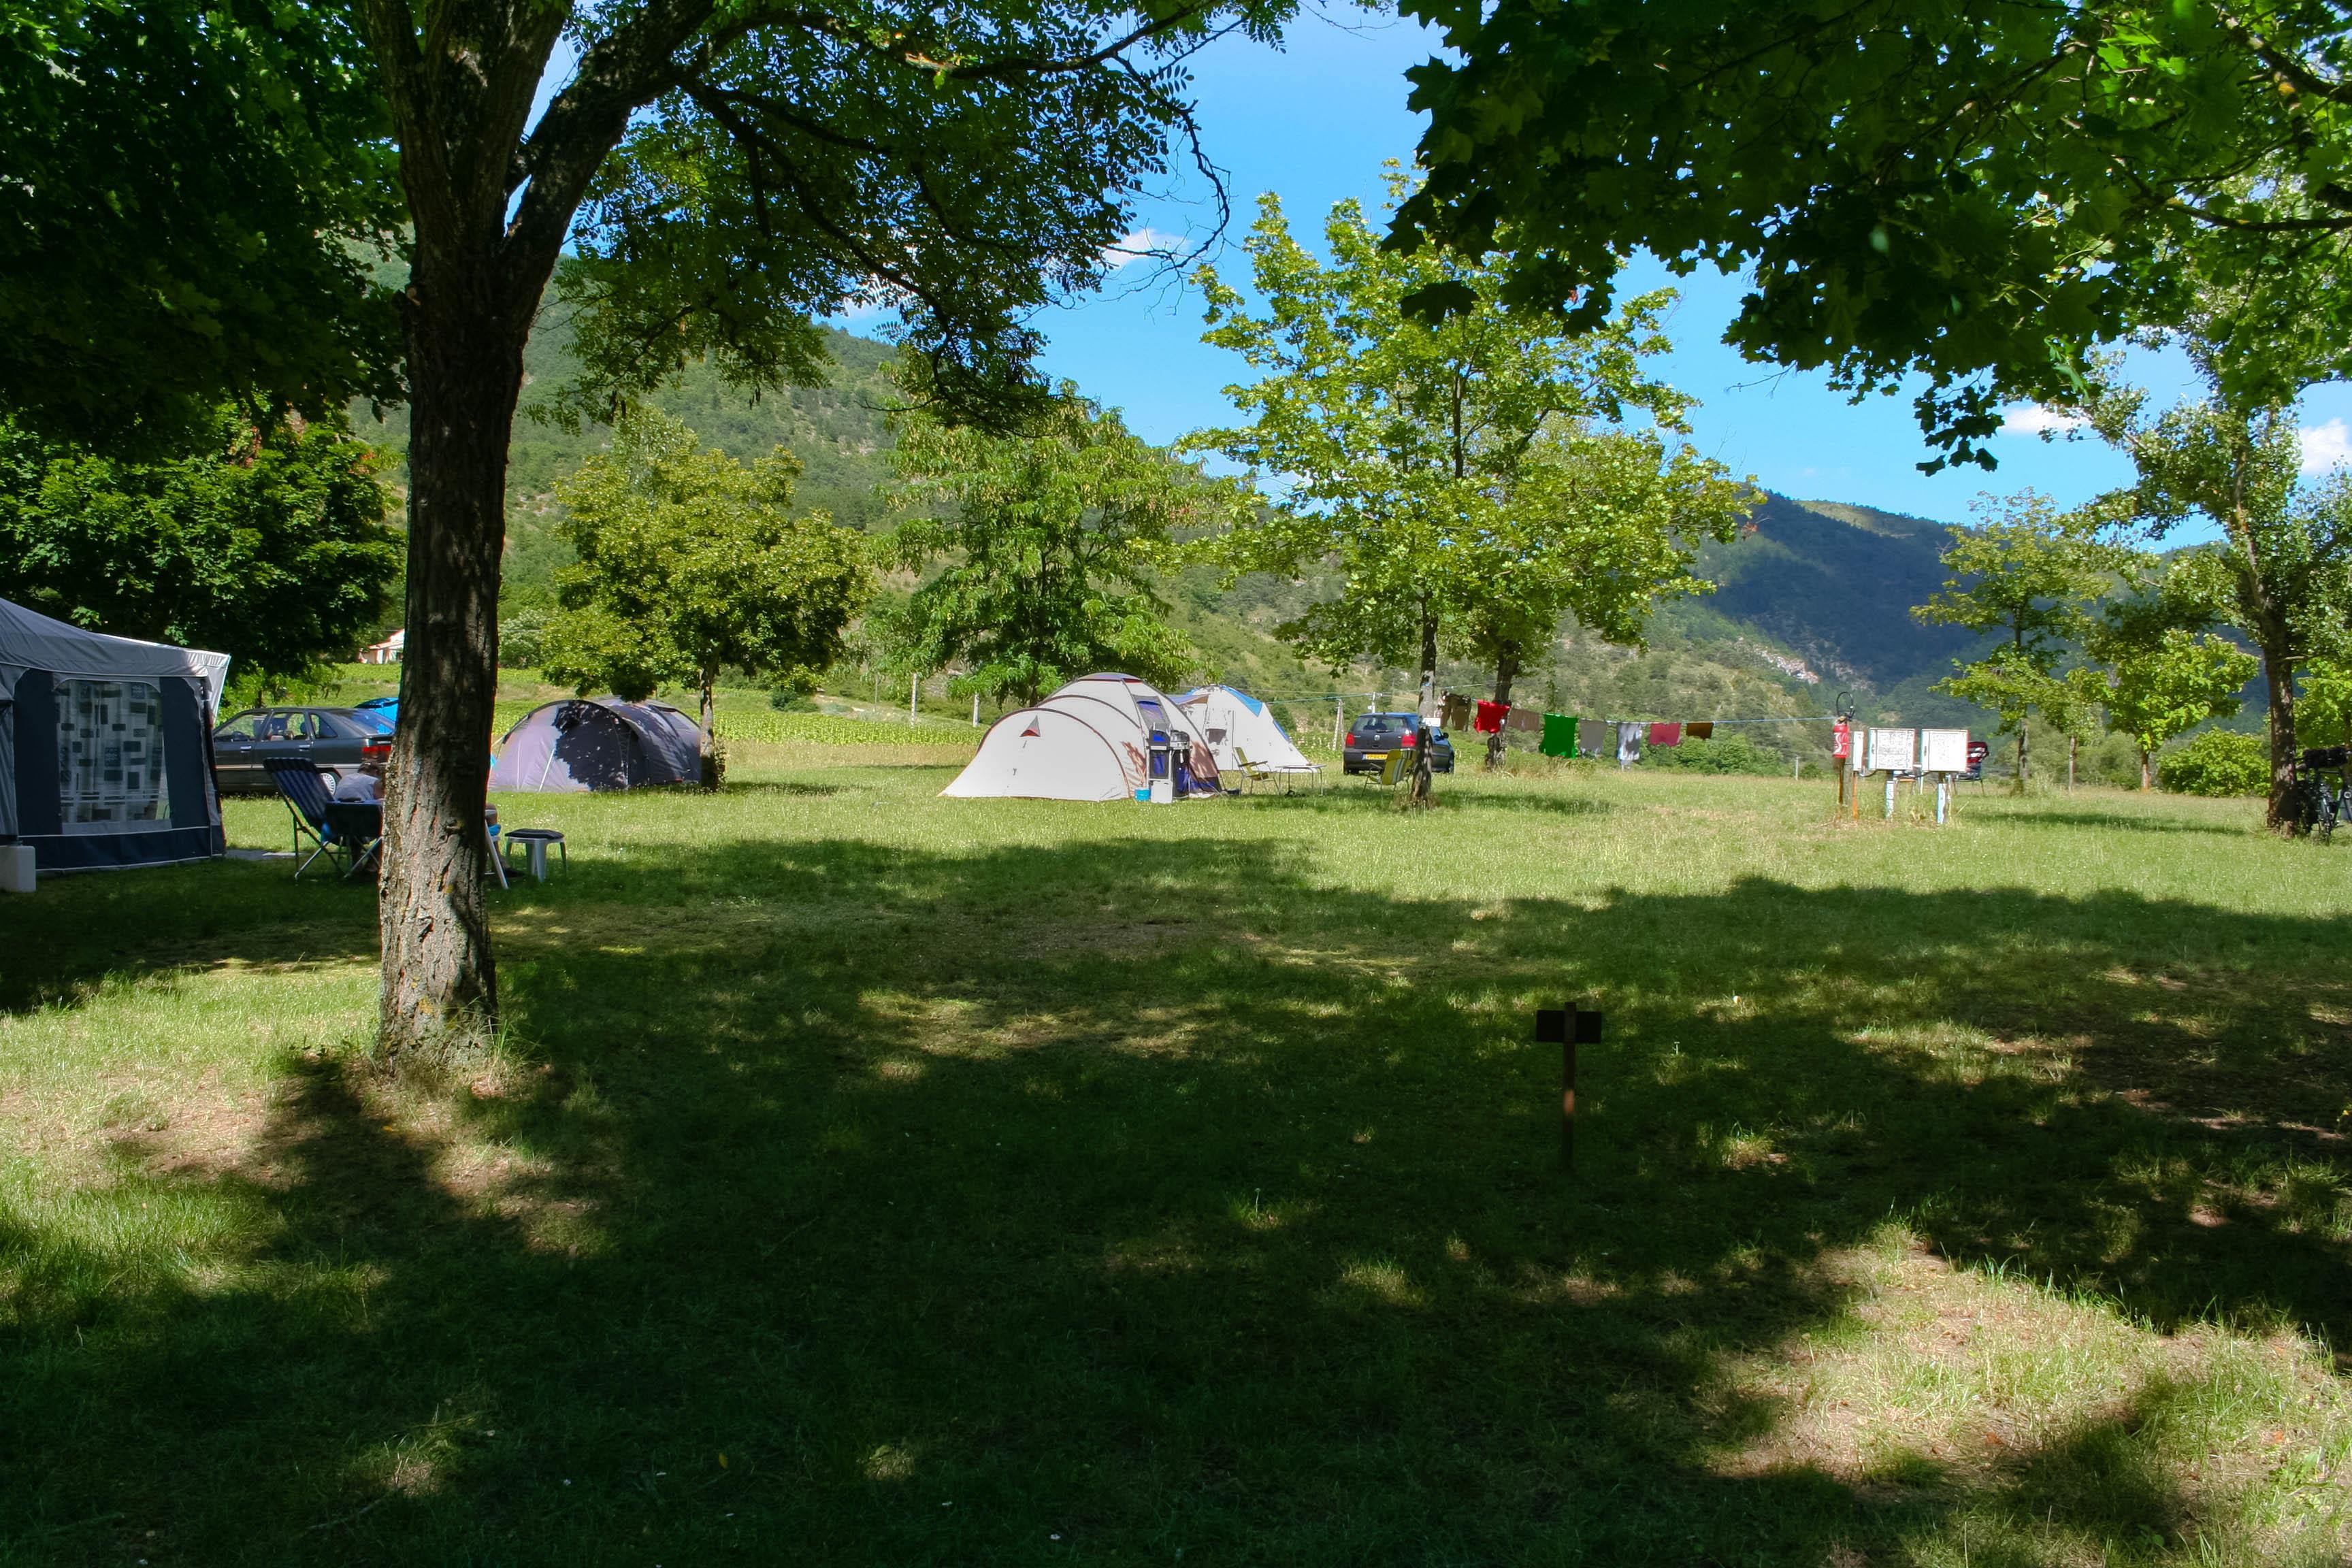 Pitch - Emplacement Pour Tente, Caravane Ou Camping Car. - CAMPING DE LA CLAIRETTE